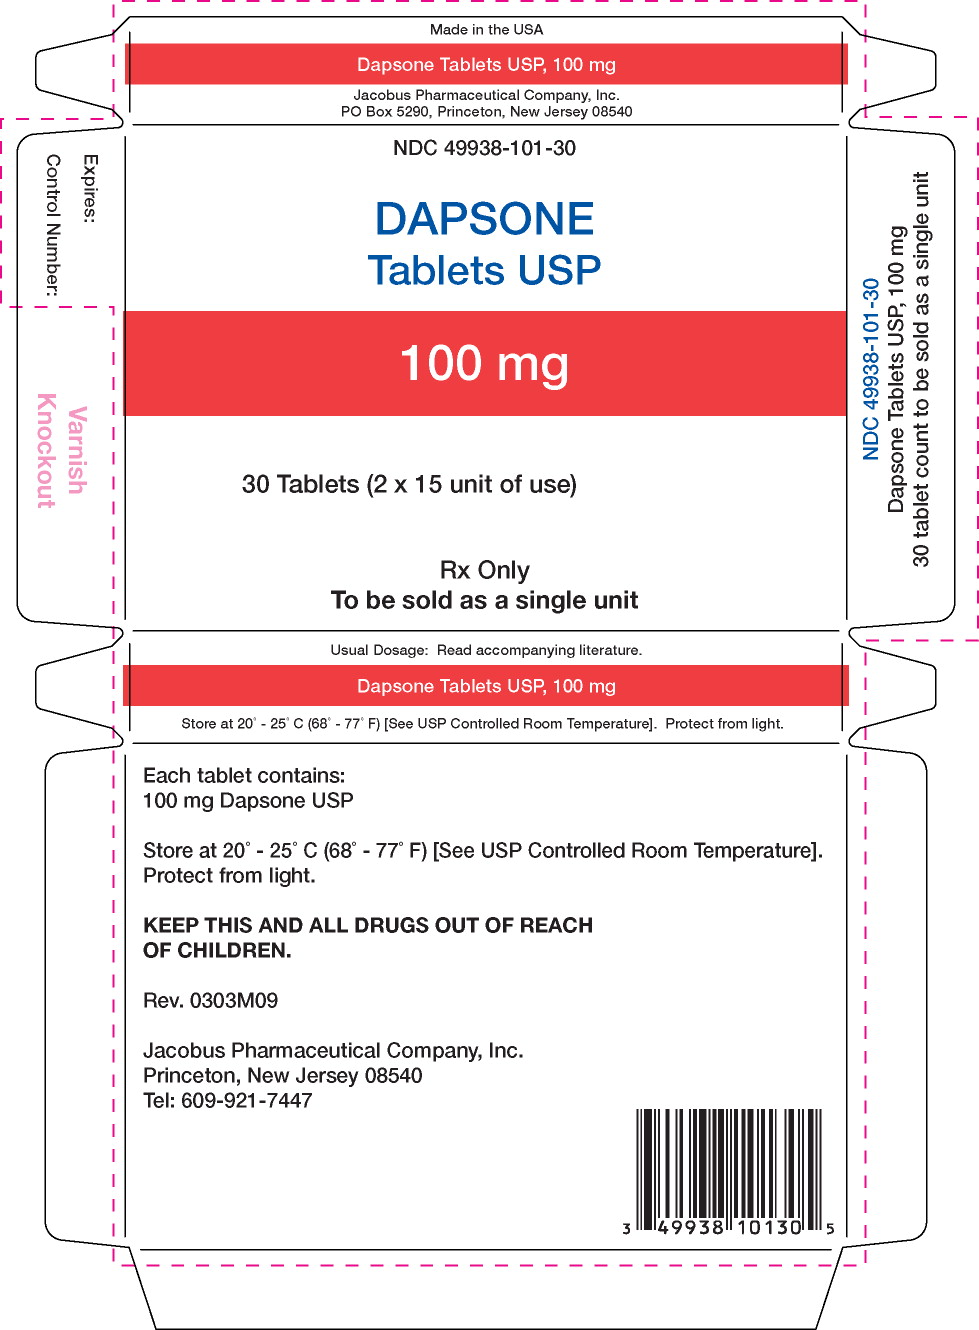 Principal Display Panel – 100 mg Carton Label
